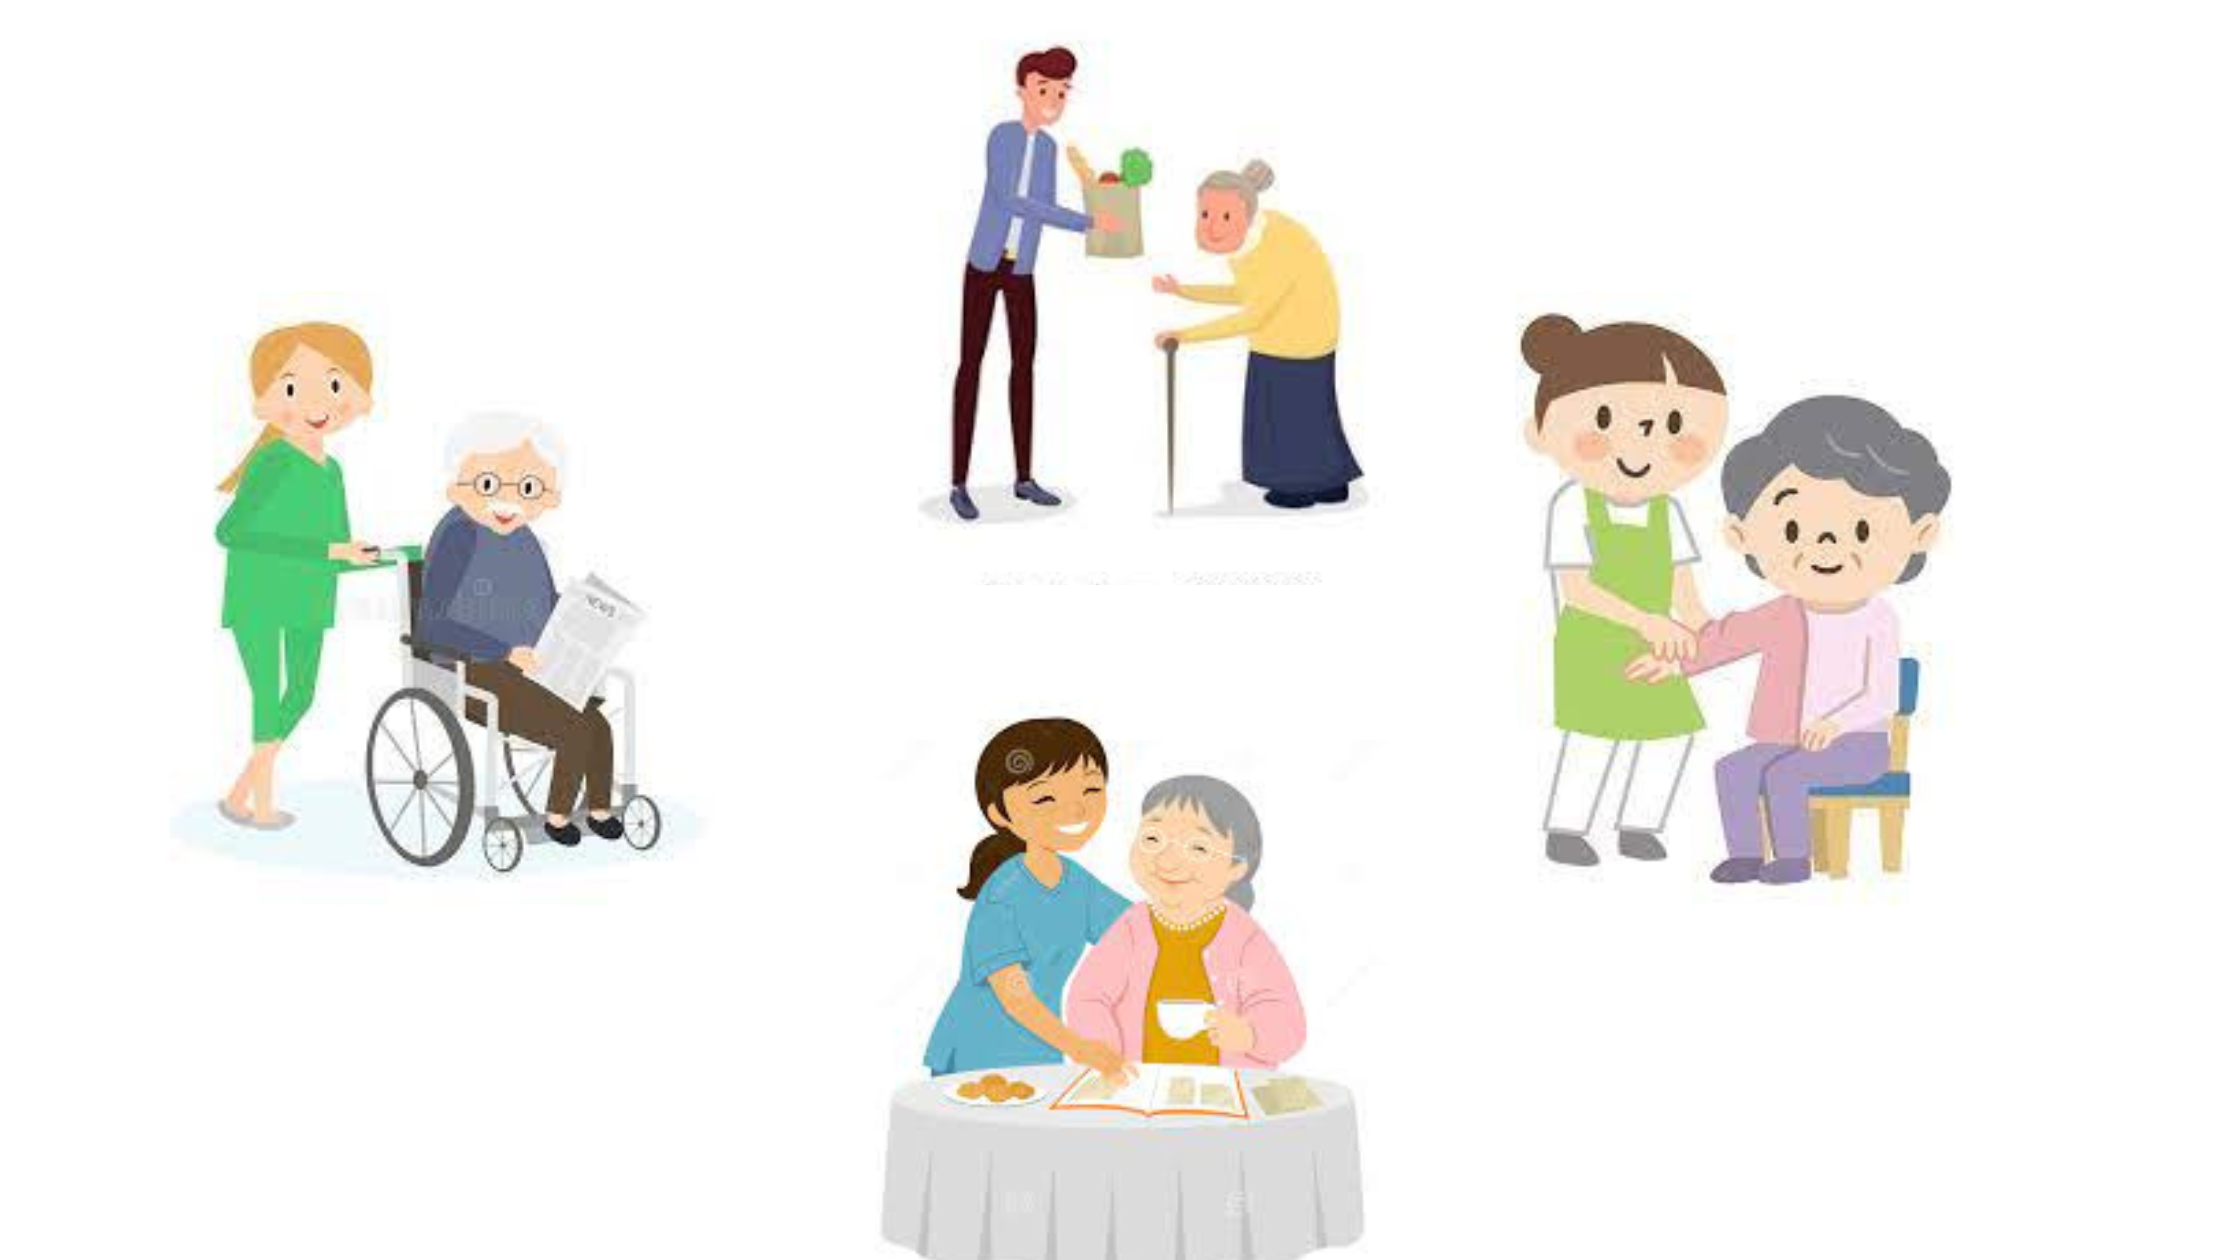 various cartoon scenarios showing long term care stock photo